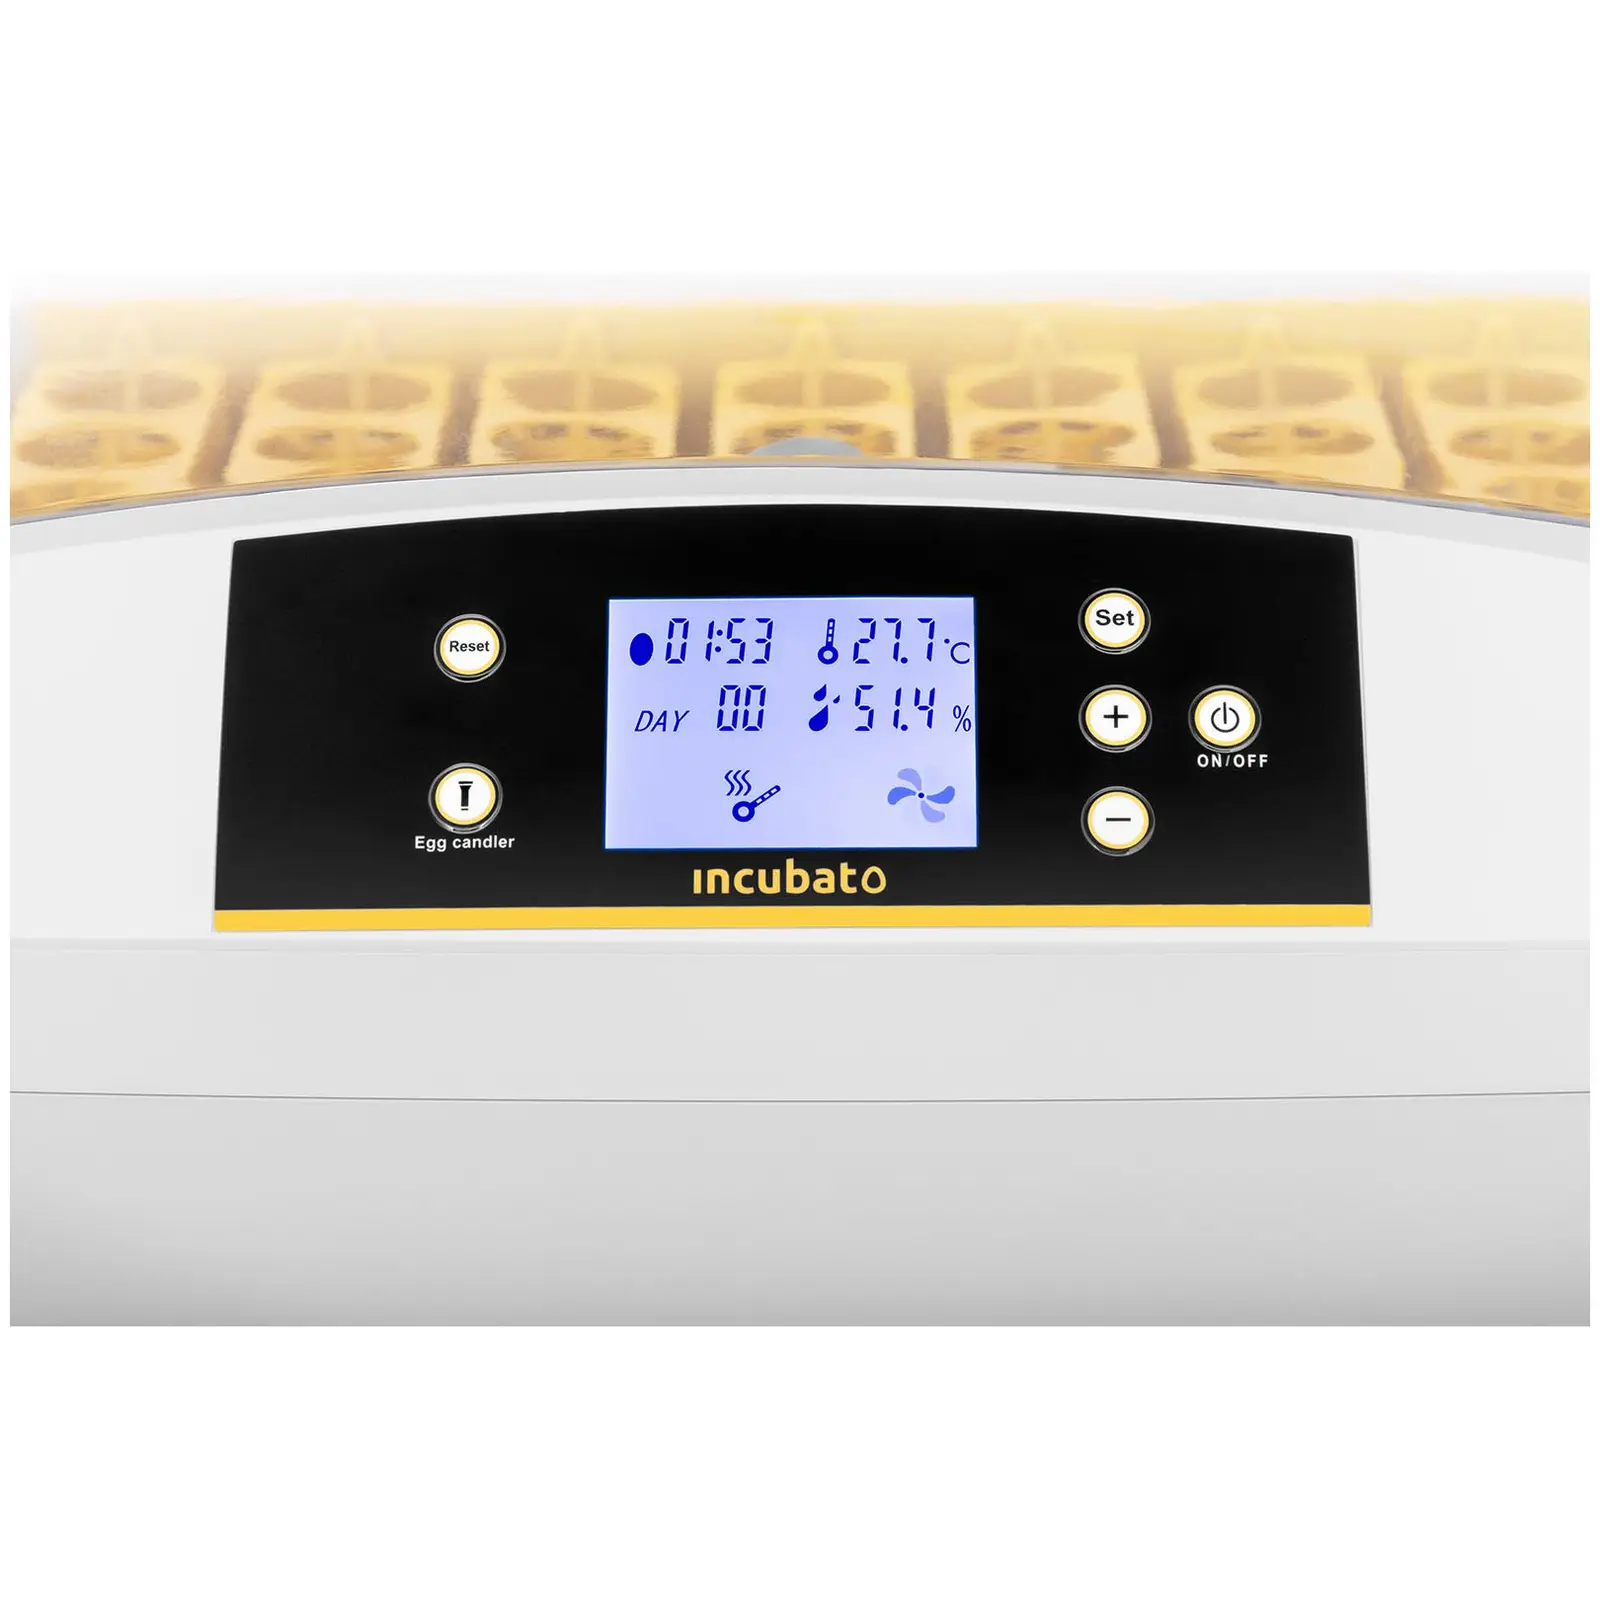 Incubadora - 42 huevos - ovoscopio integrado - totalmente automática